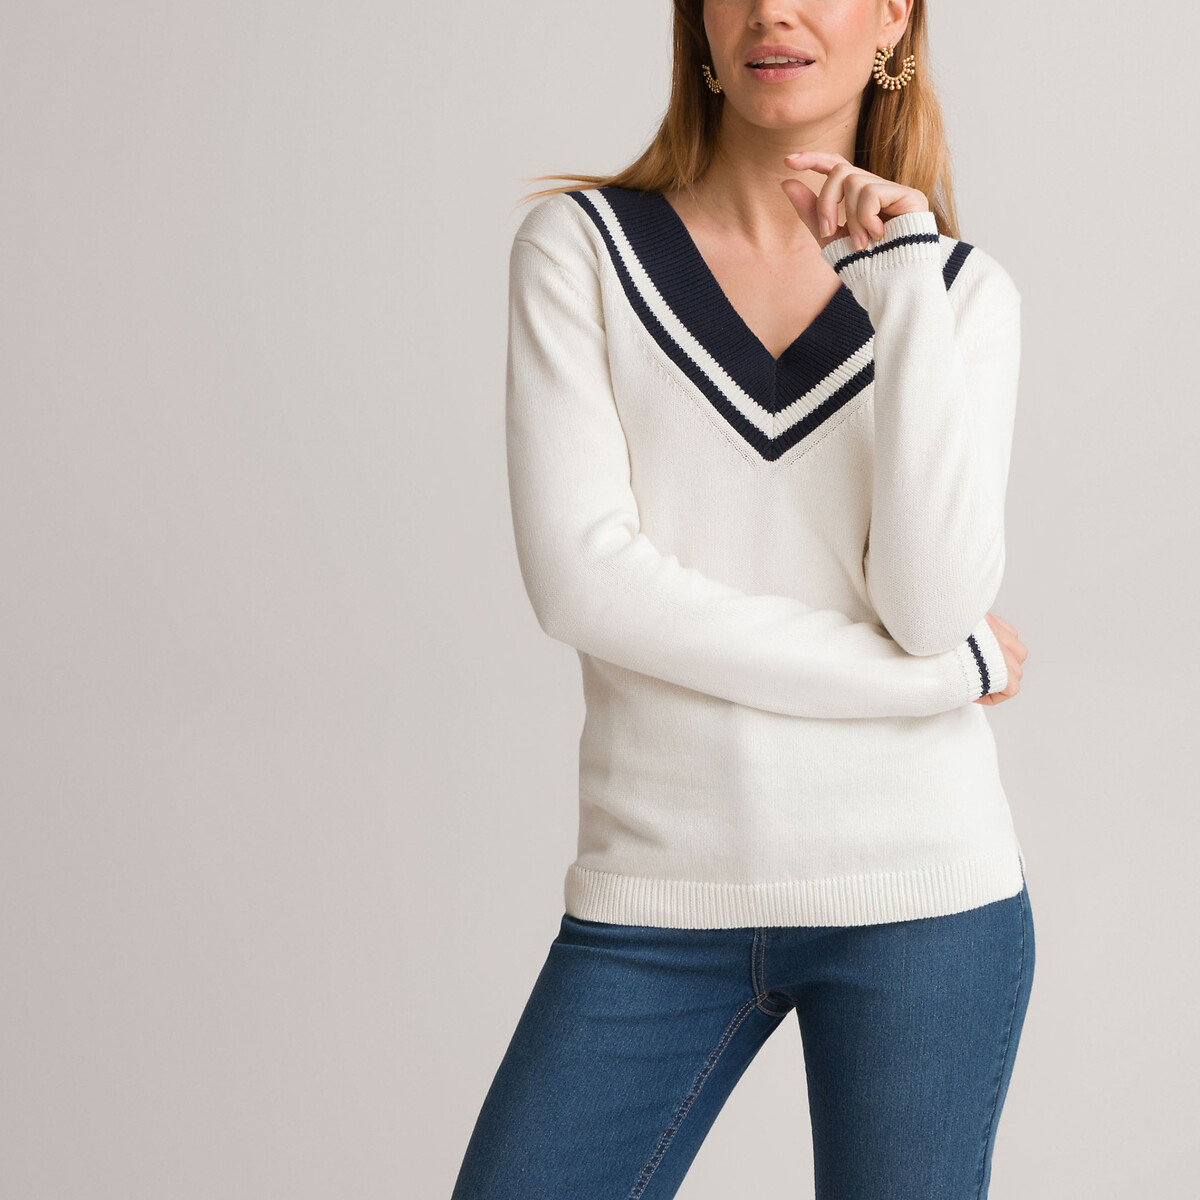 Пуловер Из хлопка с V-образным вырезом 46/48 (FR) - 52/54 (RUS) белый